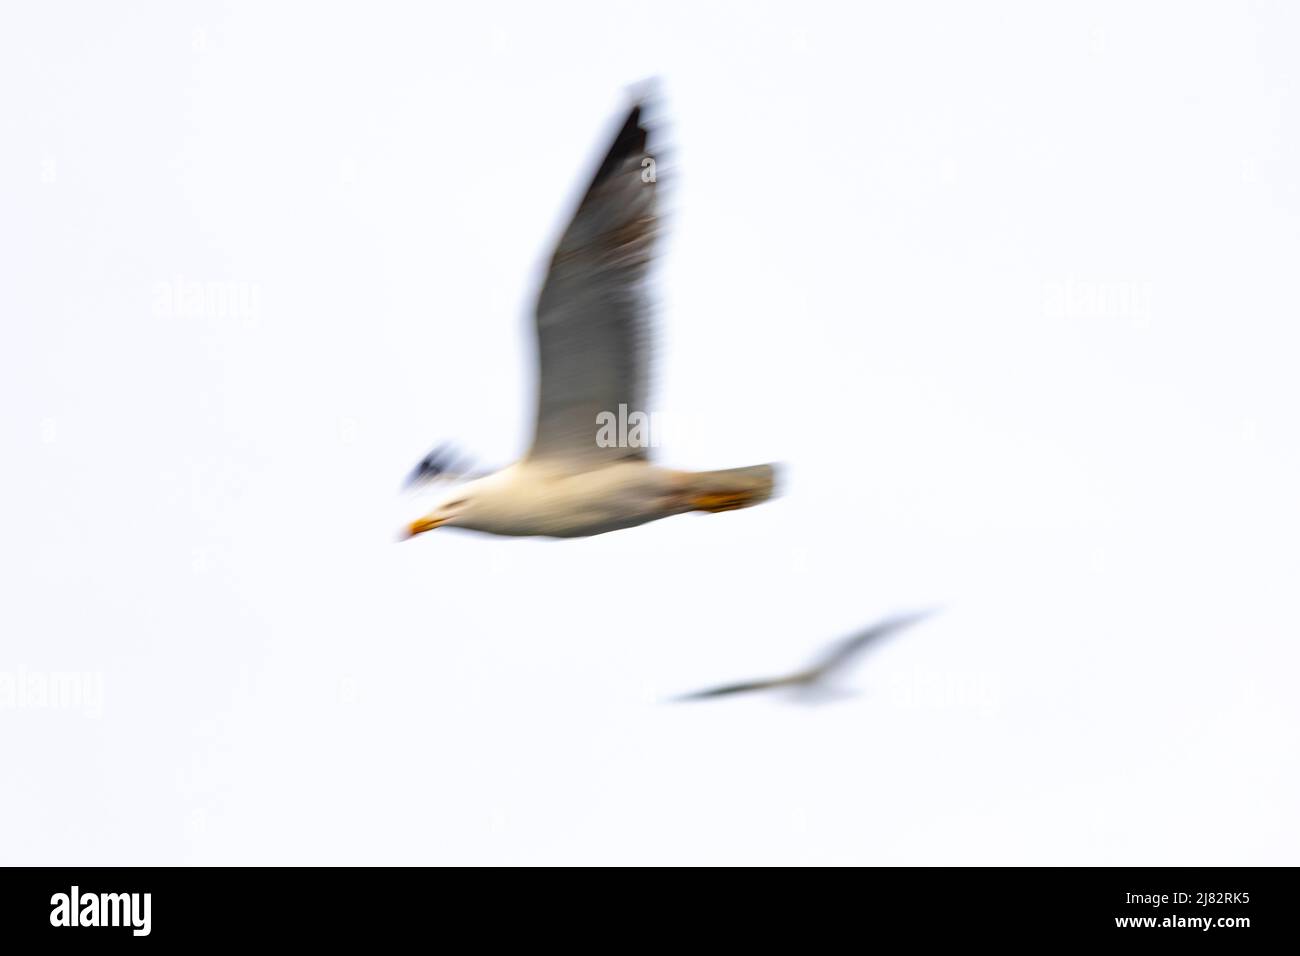 Yellow-legged gull (Larus michahellis) in flight Stock Photo